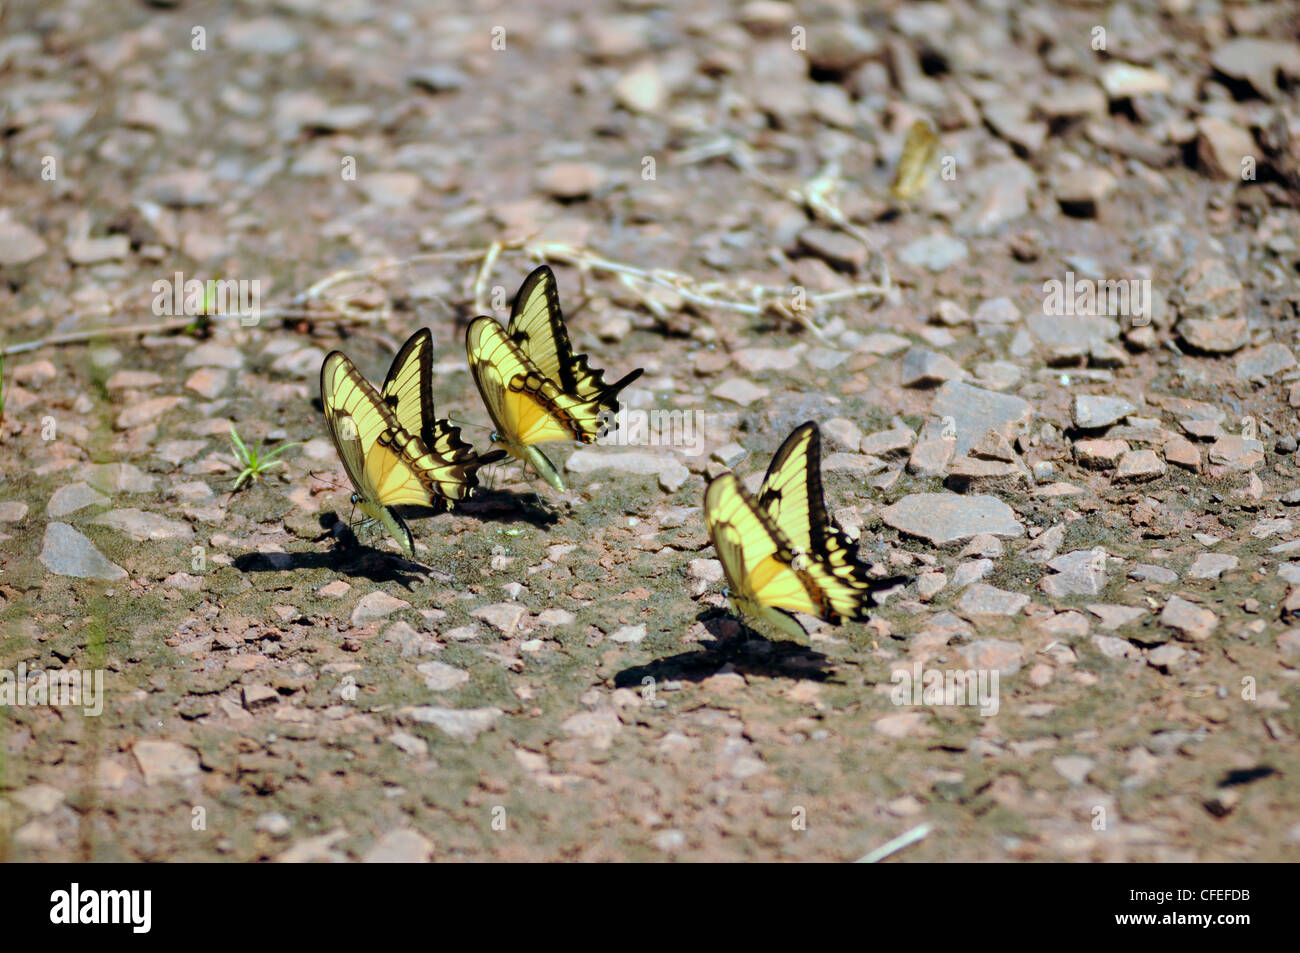 Papillons jaunes d'Amérique du Sud. Parc national d'Iguazu, Misiones, Argentine Banque D'Images